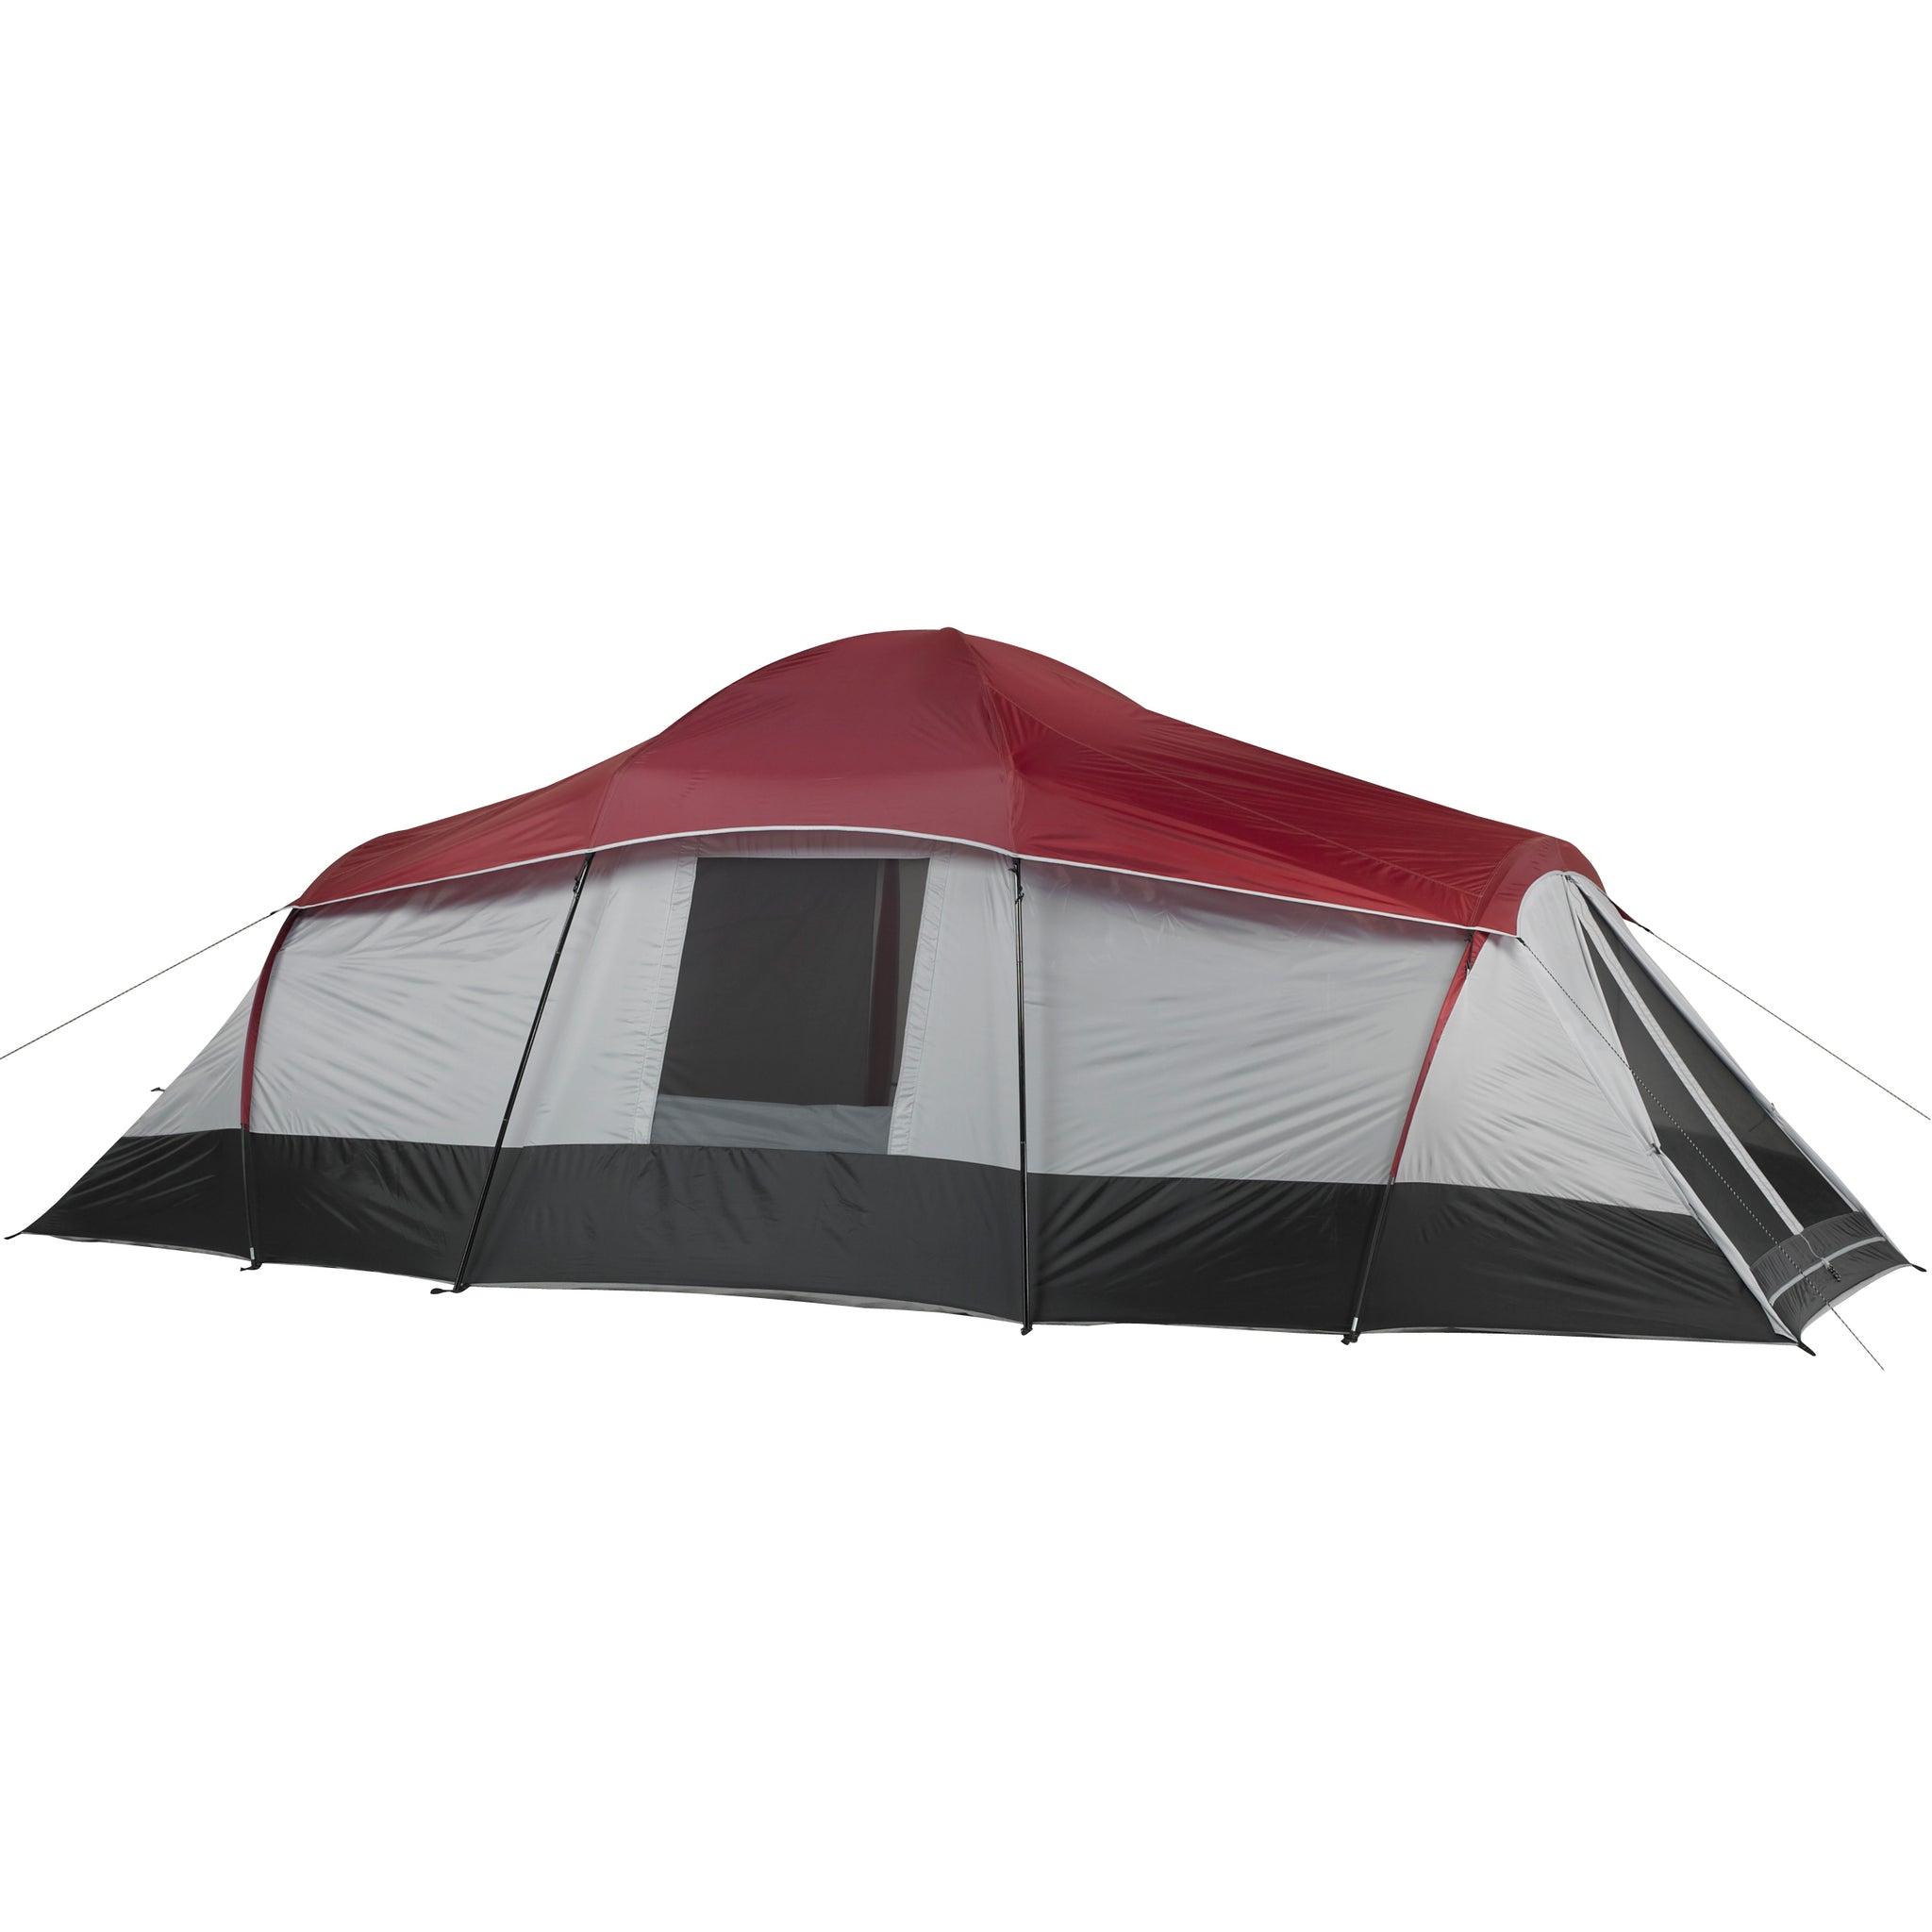 Ozark Trail 10 Person 3 Room Cabin Tents